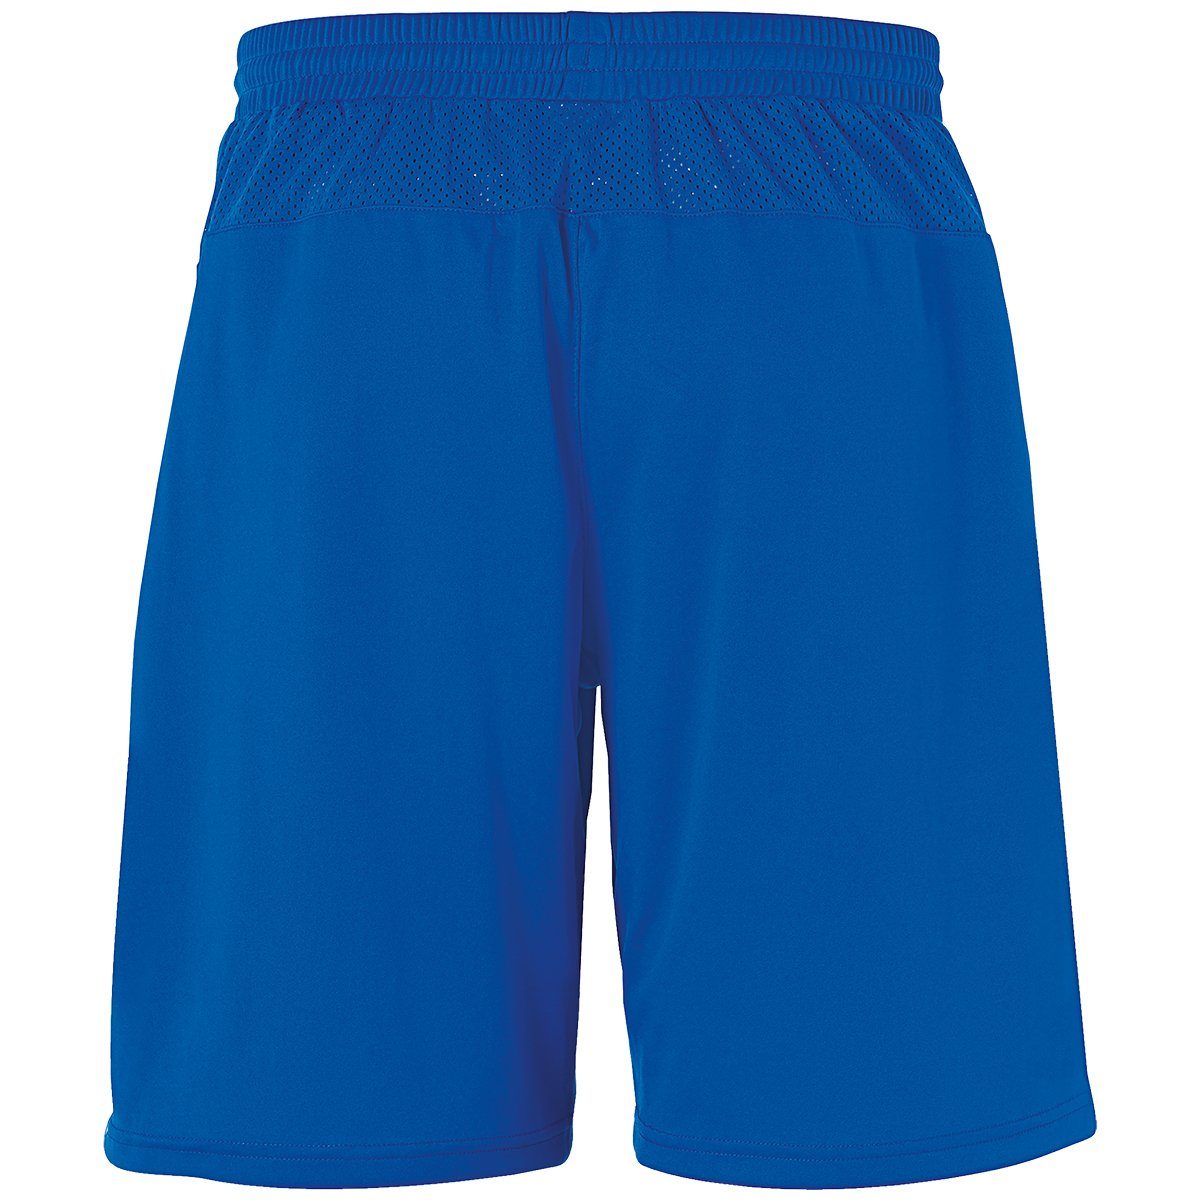 Shorts uhlsport SHORTS Shorts azurblau/weiß uhlsport PERFORMANCE